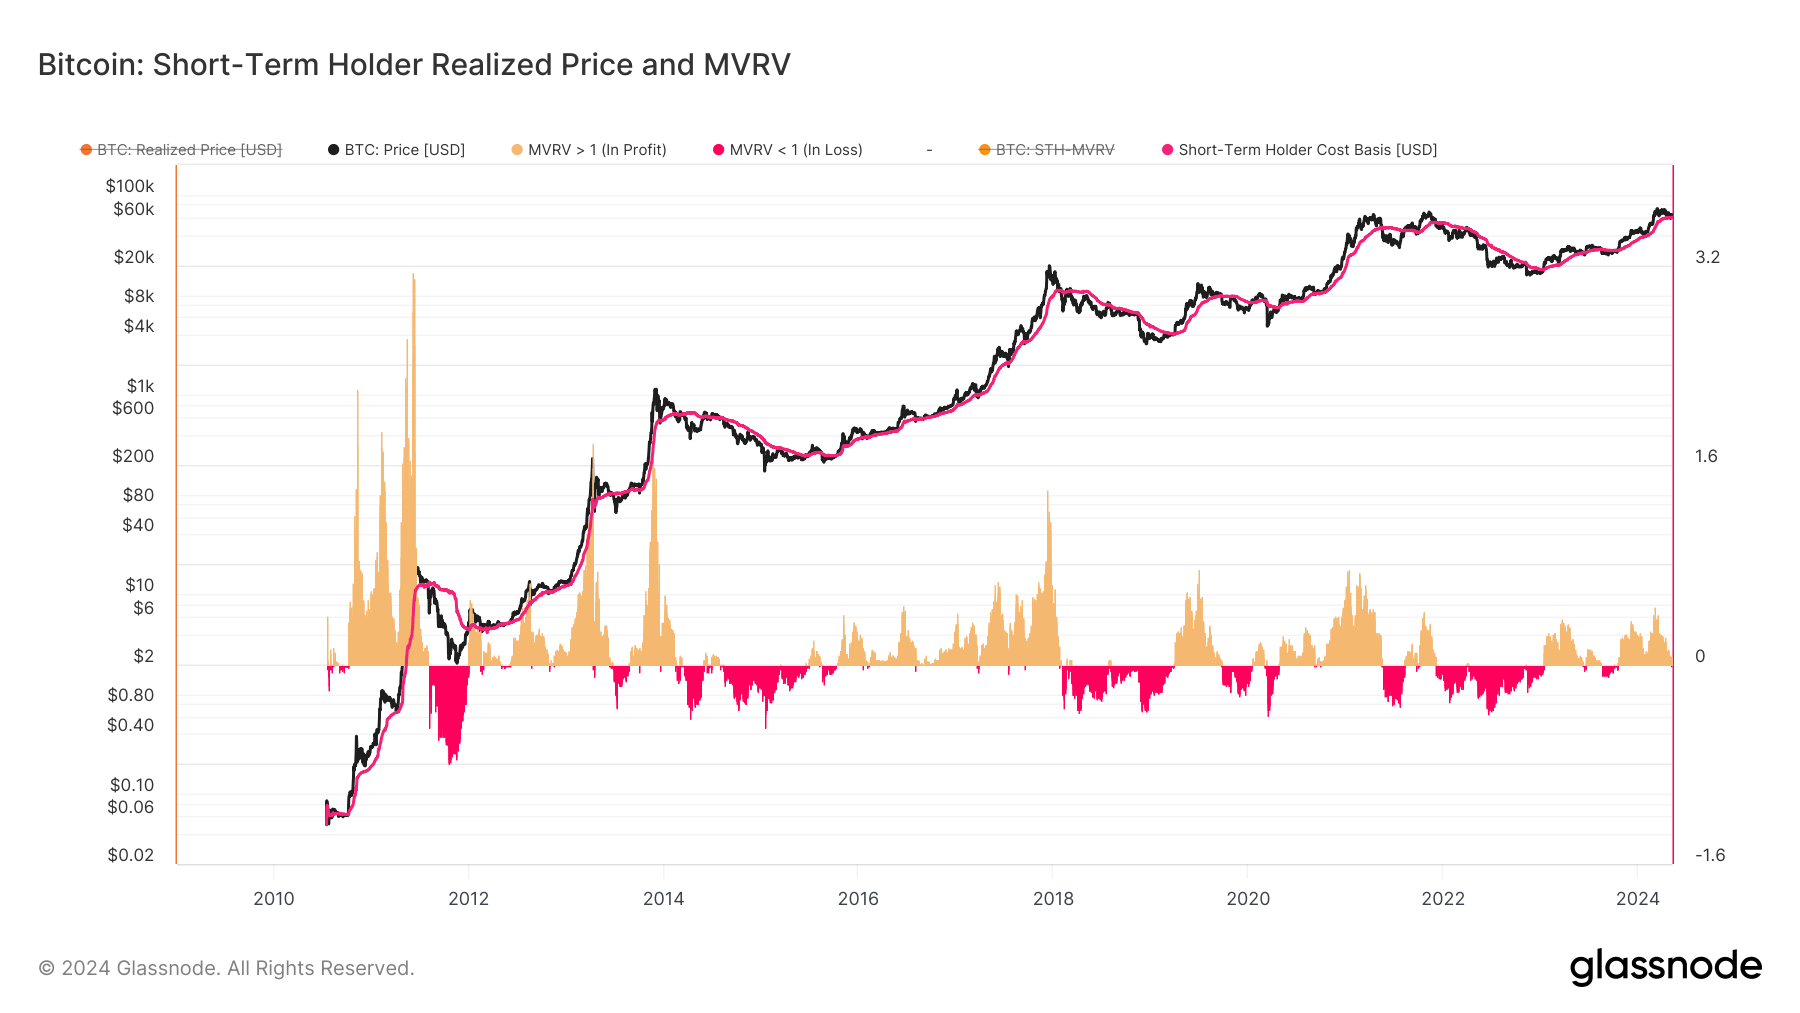 Short-Term Holder Realized Price and MVRV: (Source: Glassnode)